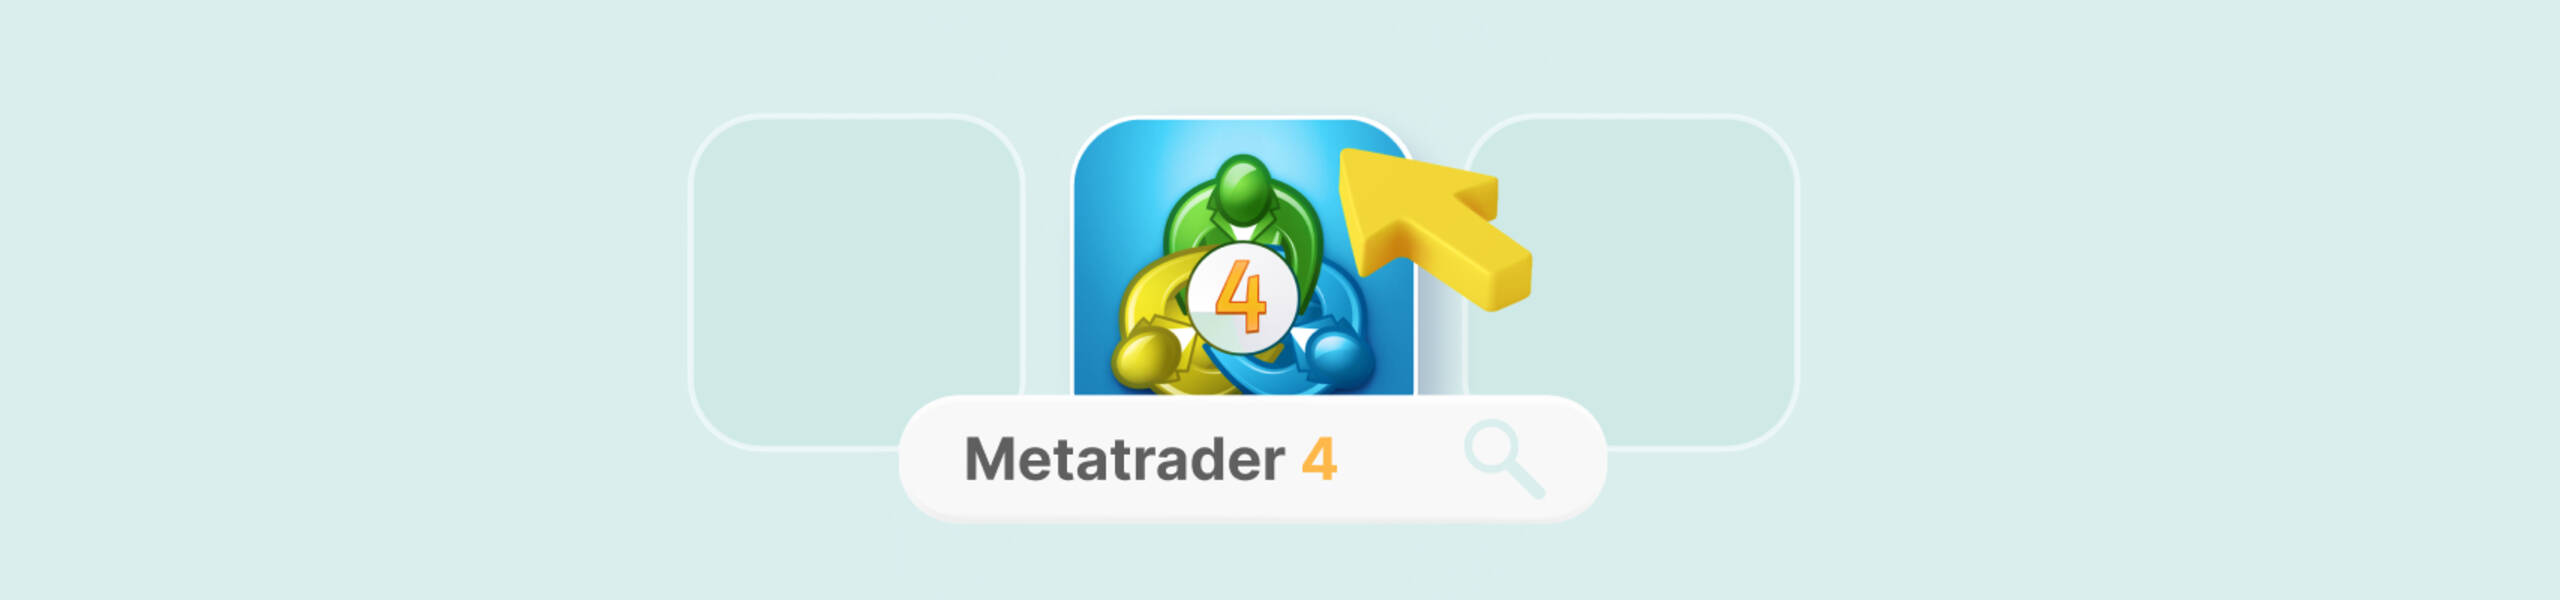 Como usar o MetaTrader 4: guia para iniciantes